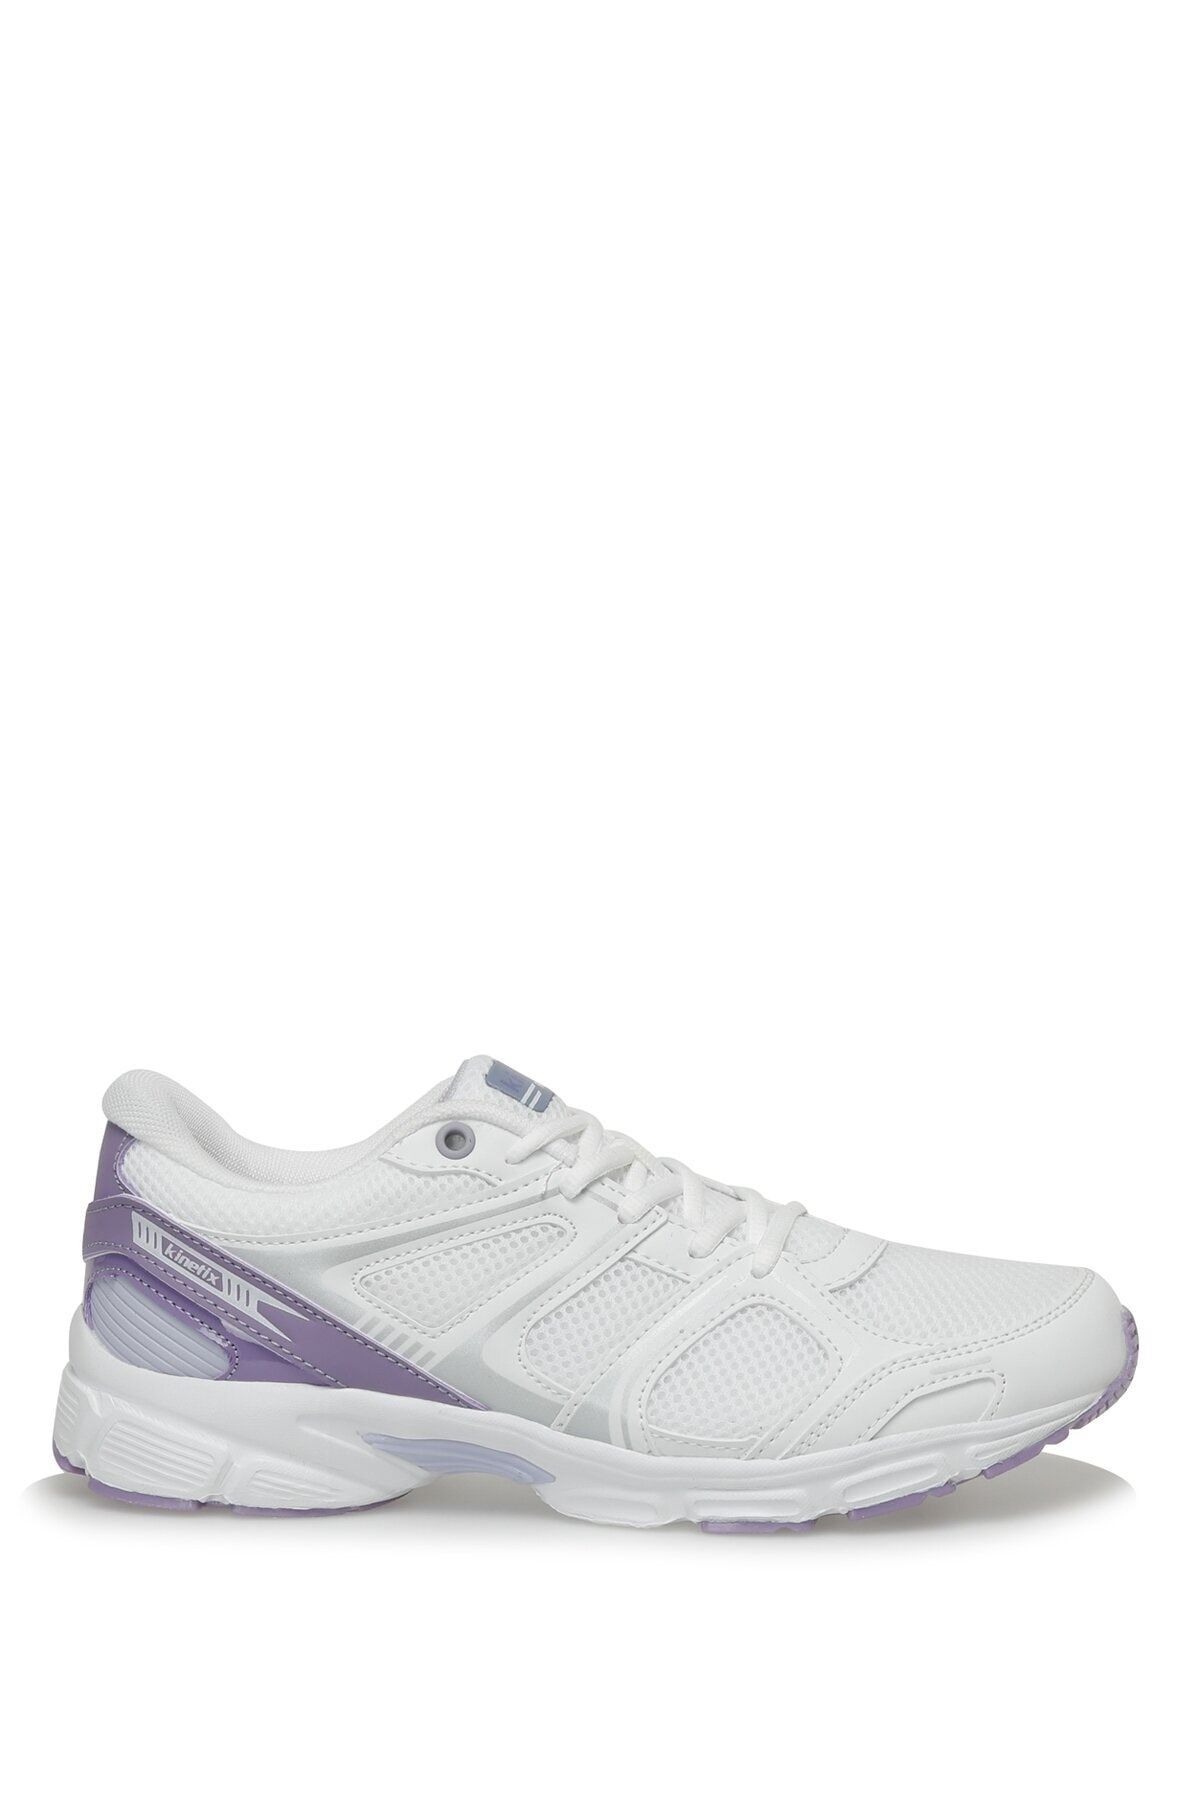 Kinetix Arıon Tx W 3fx Beyaz Kadın Koşu Ayakkabısı